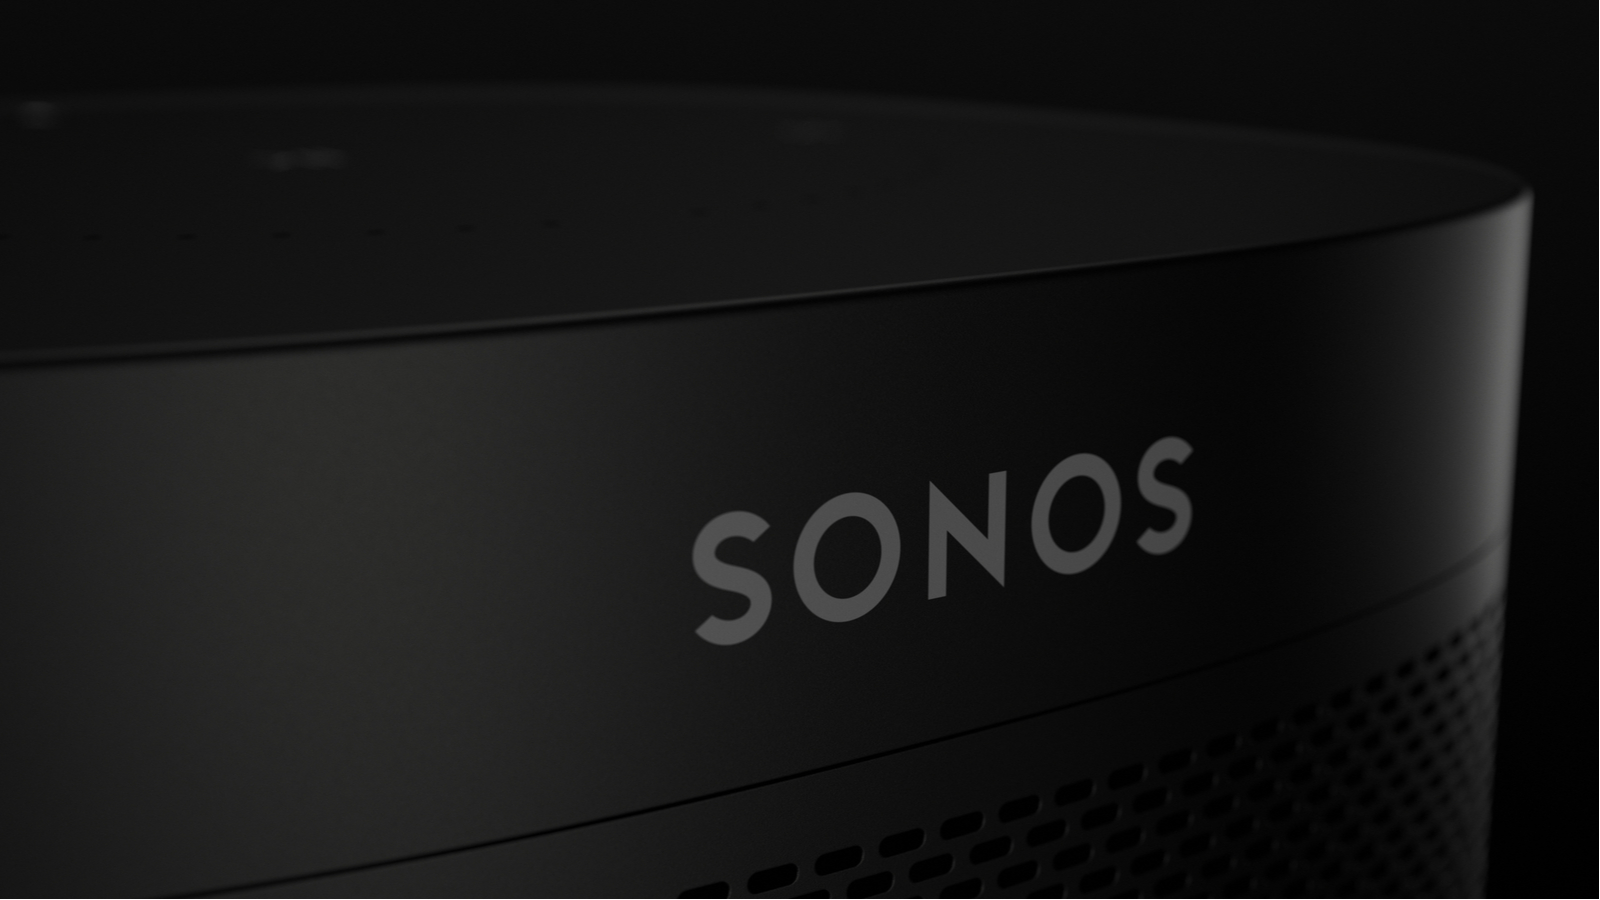 Nouveau déboire pour Sonos qui expose plusieurs centaines d'adresses mails clients